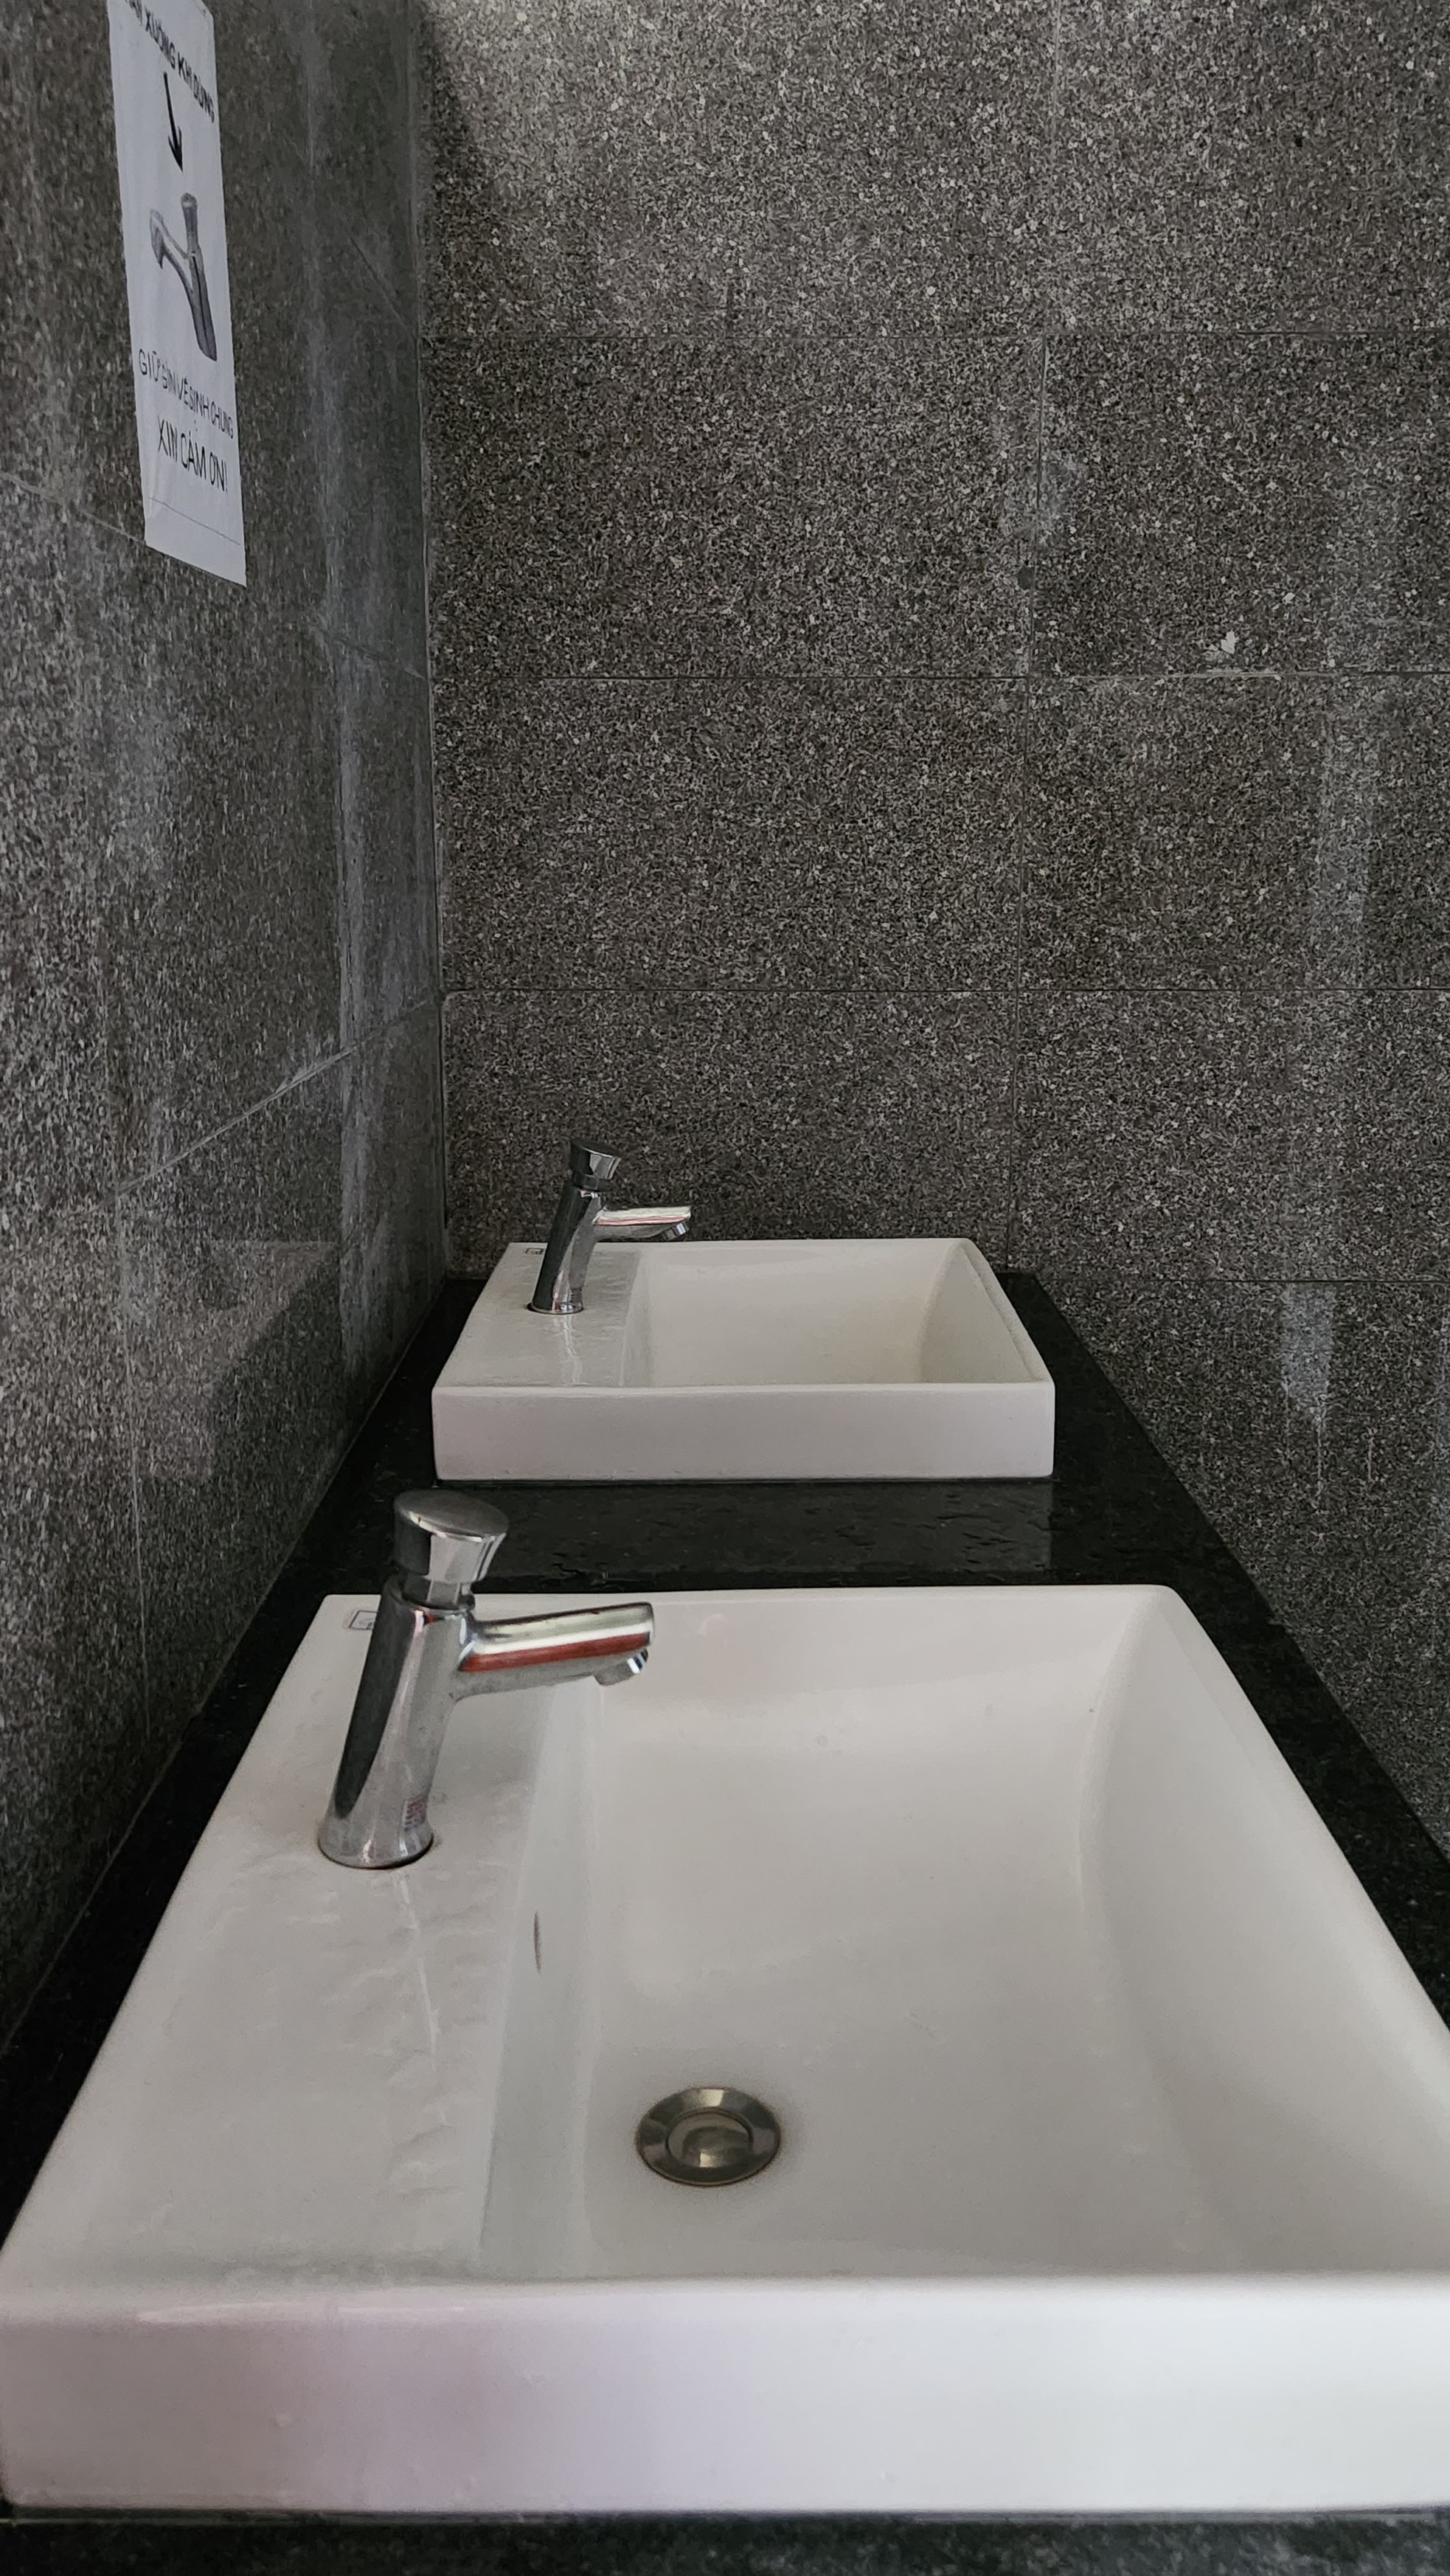 Nhà vệ sinh công cộng như trong khách sạn hạng sang ở Huế - Ảnh 6.